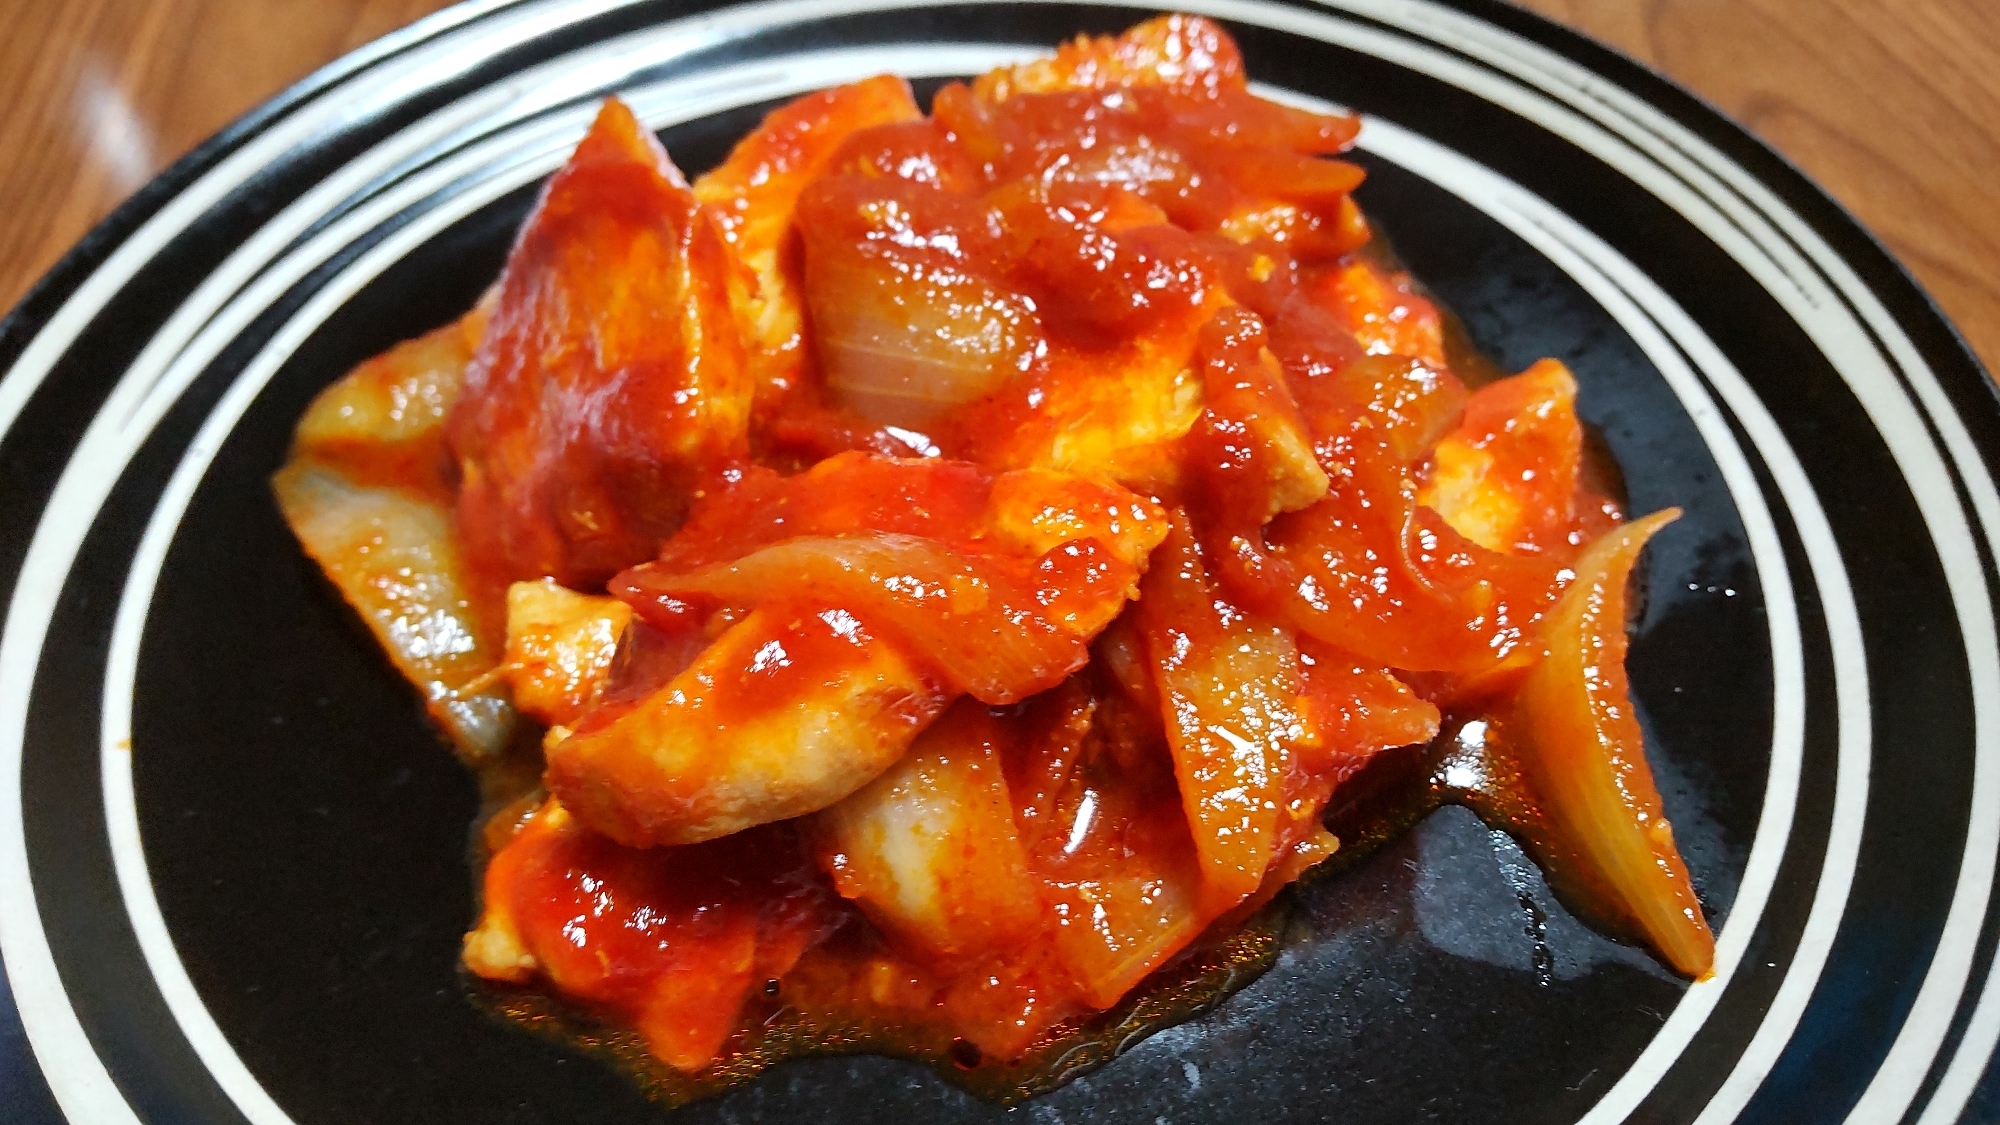 鶏のトマト煮